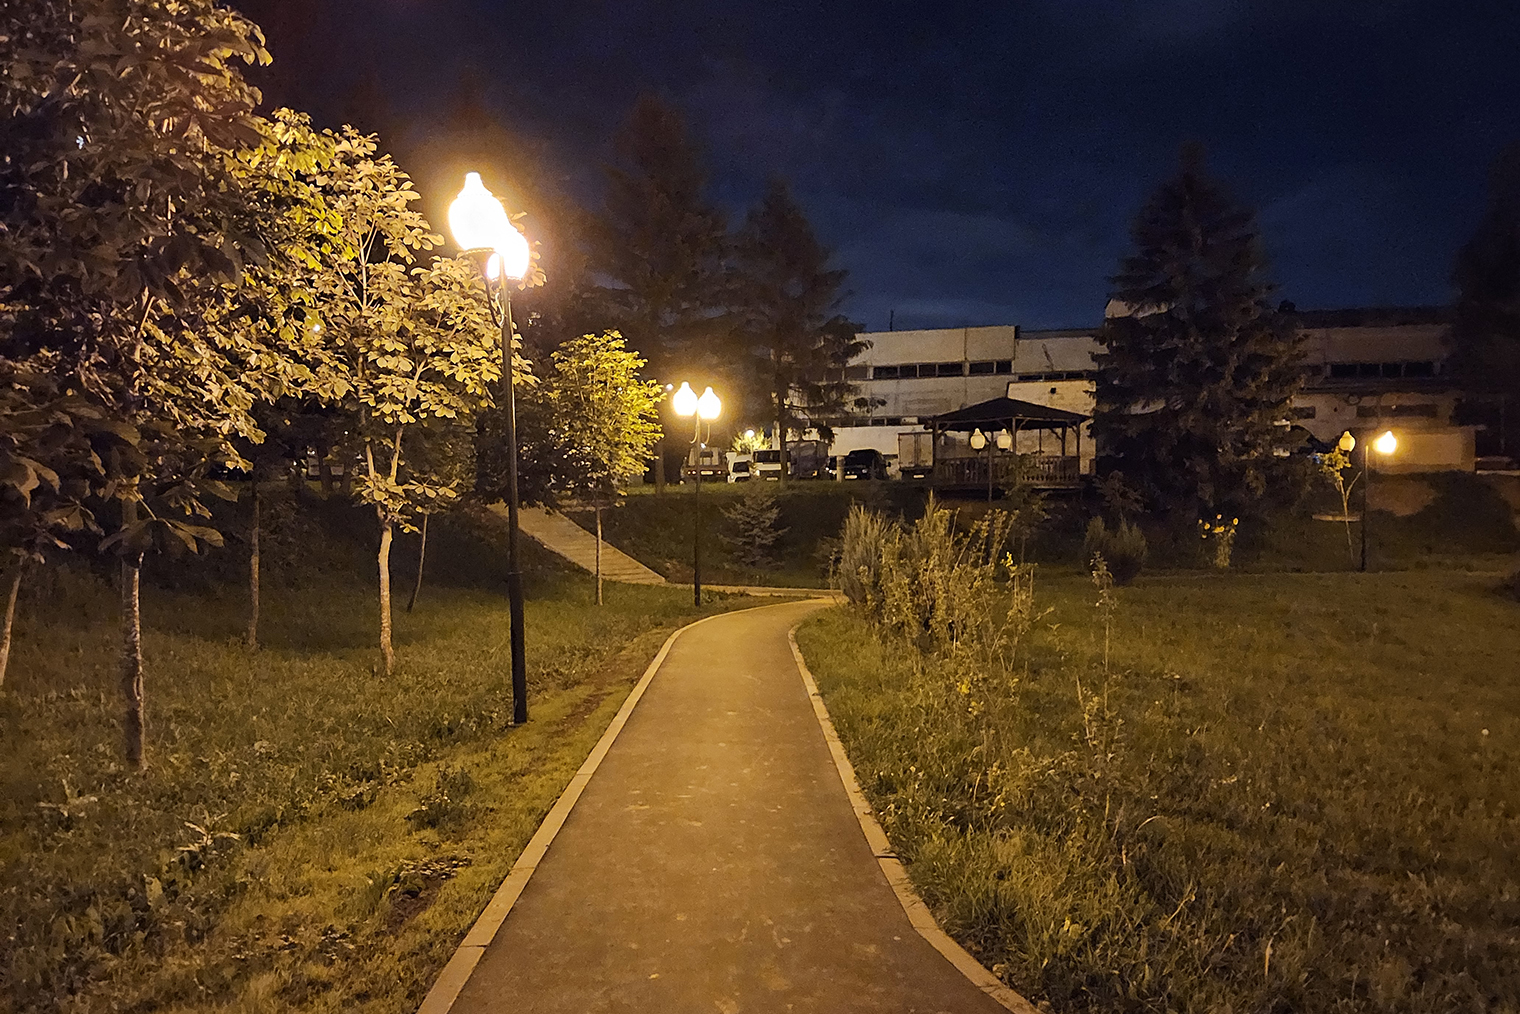 Вечерние фото не хочется выкладывать в соцсети: фонари пересвечены, мелкие детали вроде травы или листвы теряют четкость